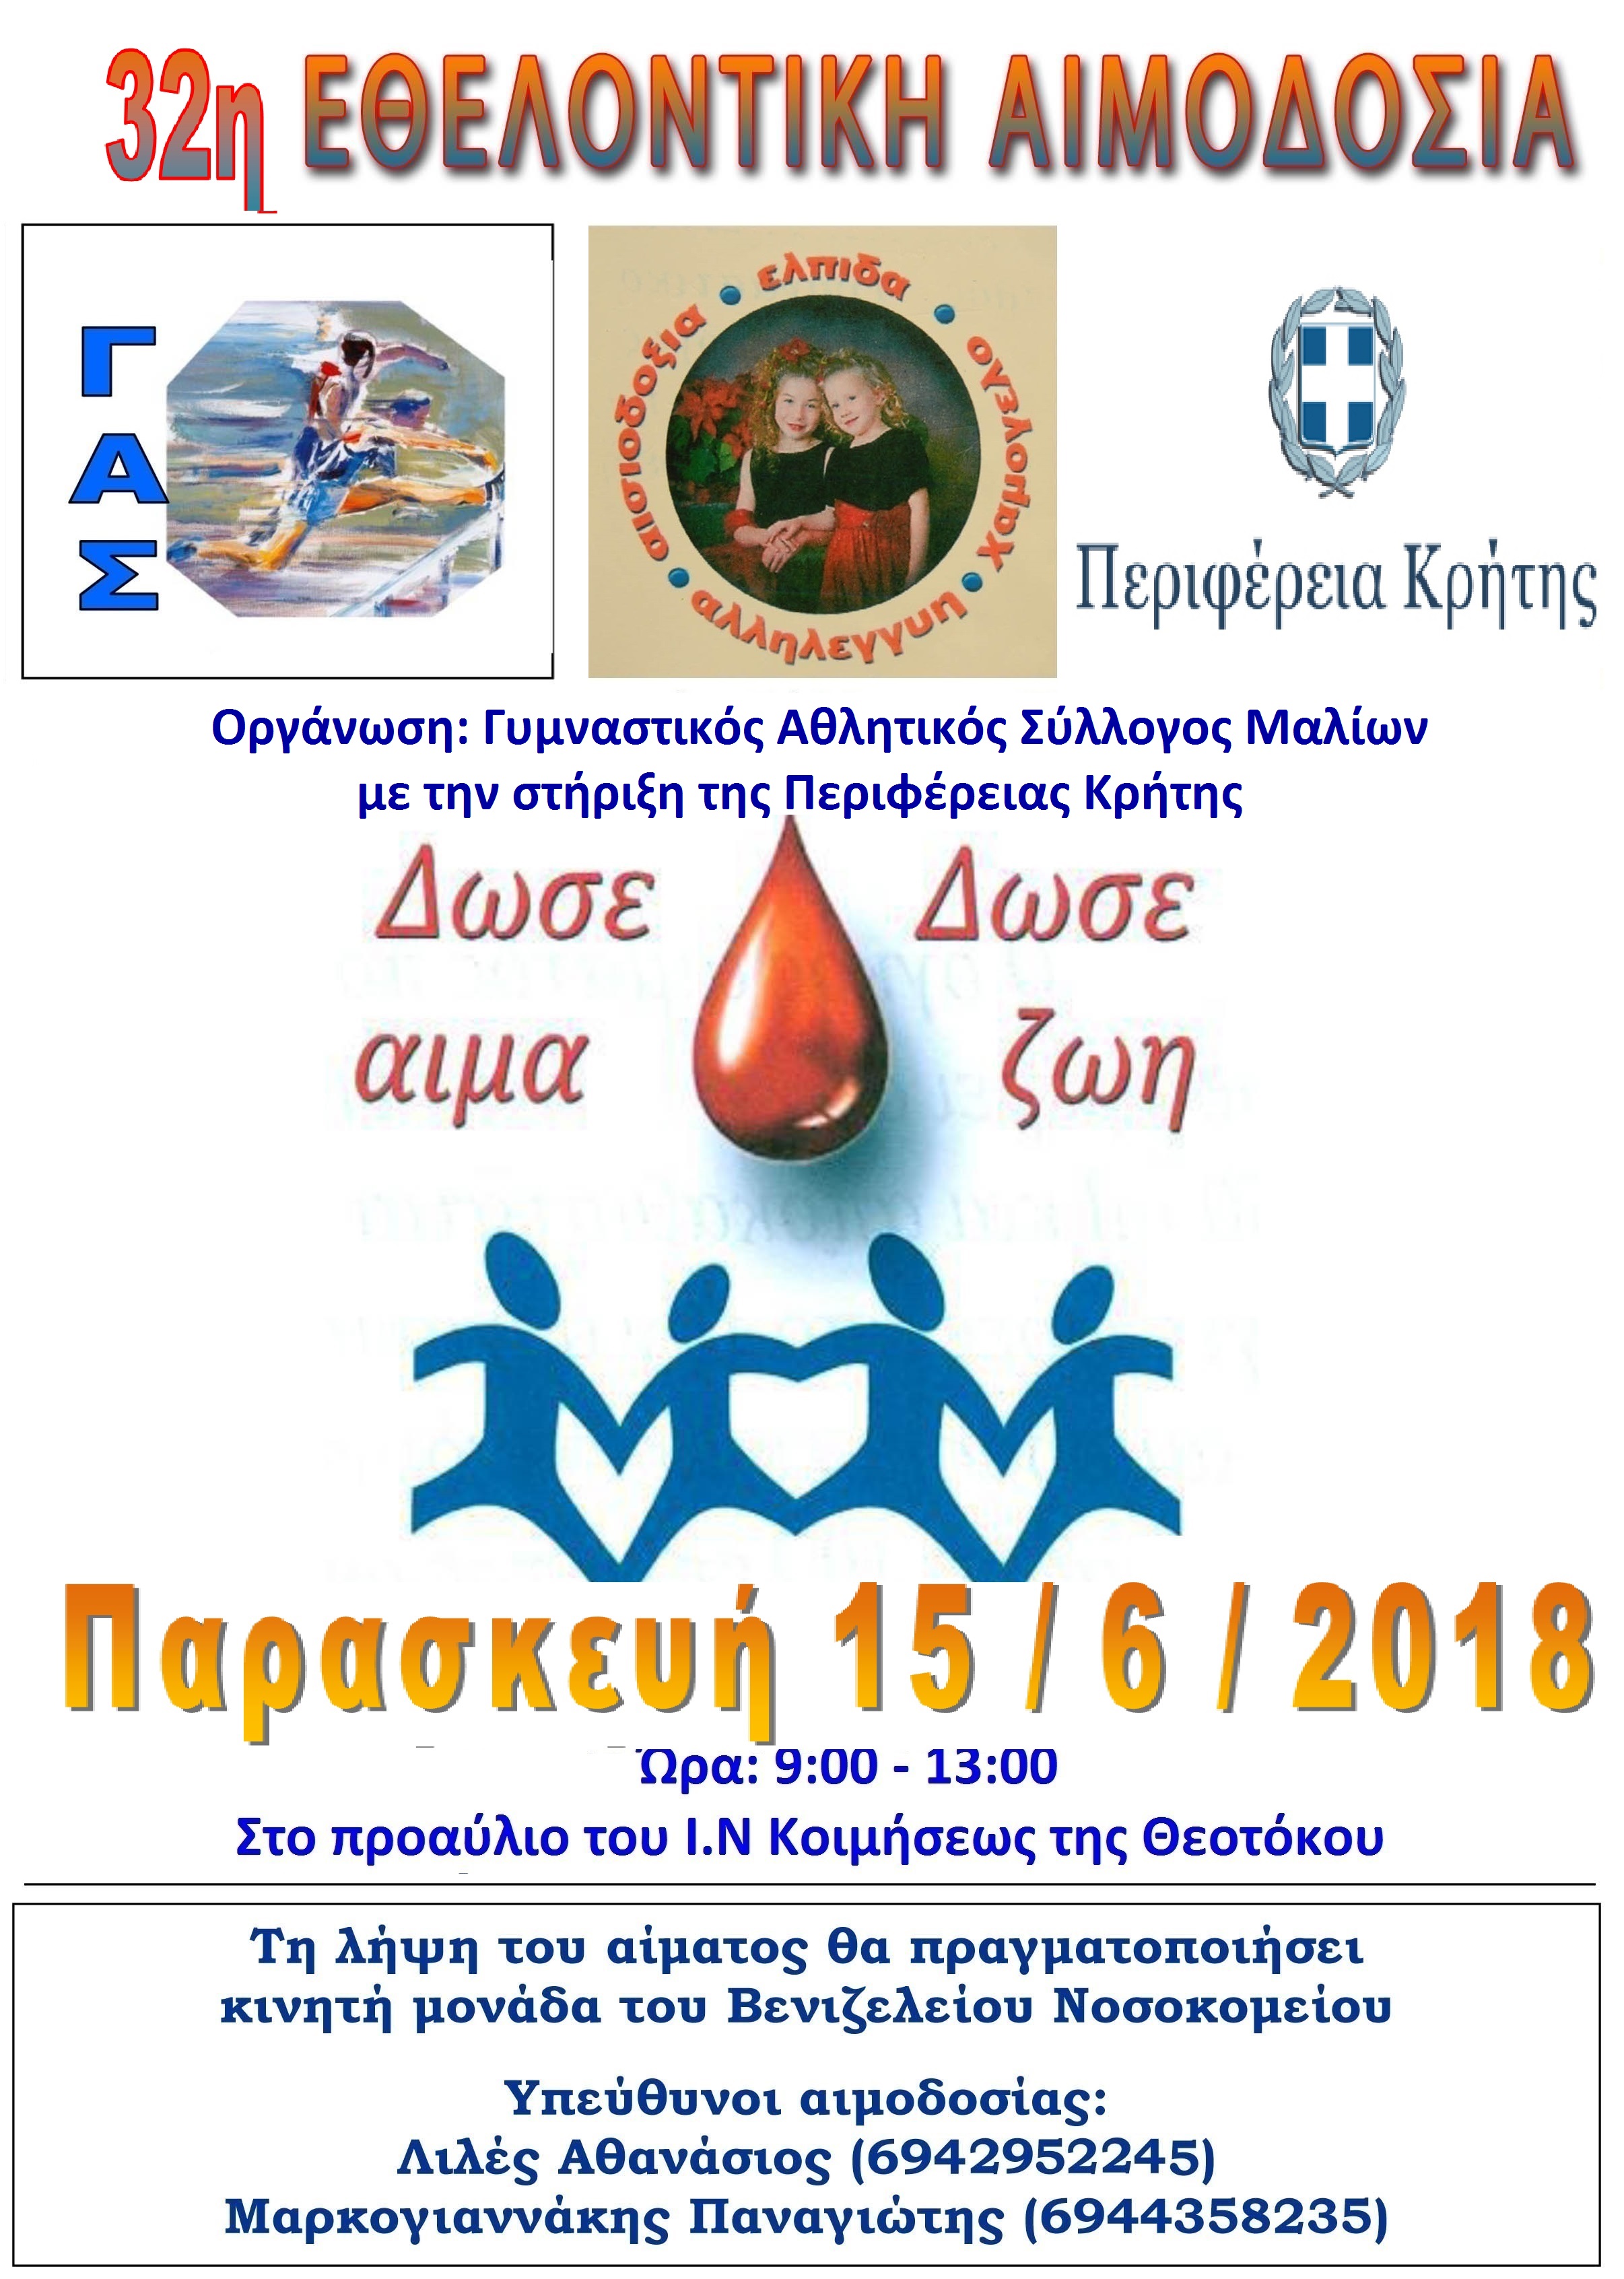 Με την στήριξη της Περιφέρειας Κρήτης εθελοντική αιμοδοσία 